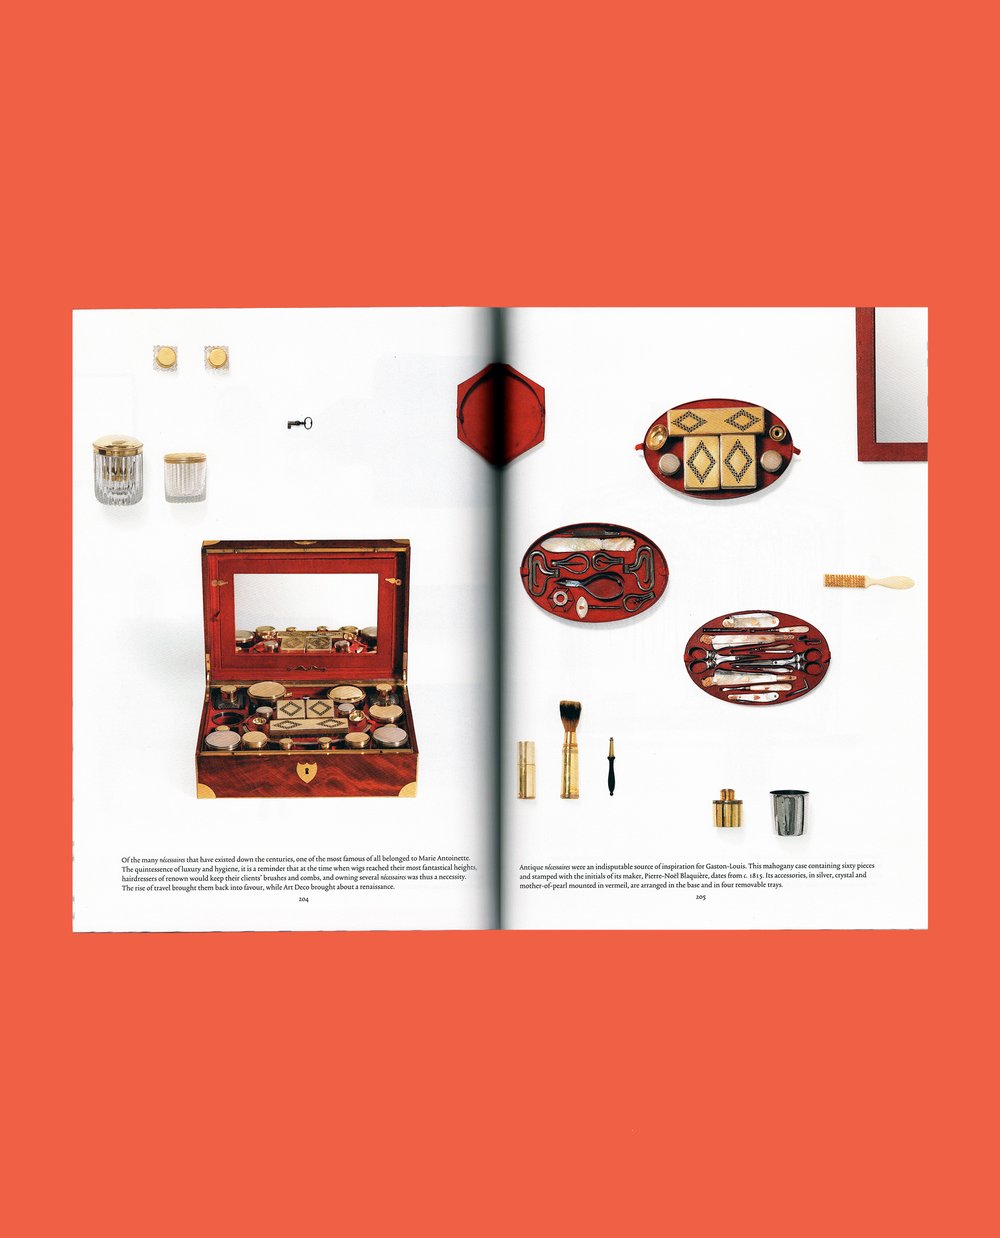 Cabinet of Wonders: The Gaston-Louis Vuitton Collection — Mr. Boddington's  Studio